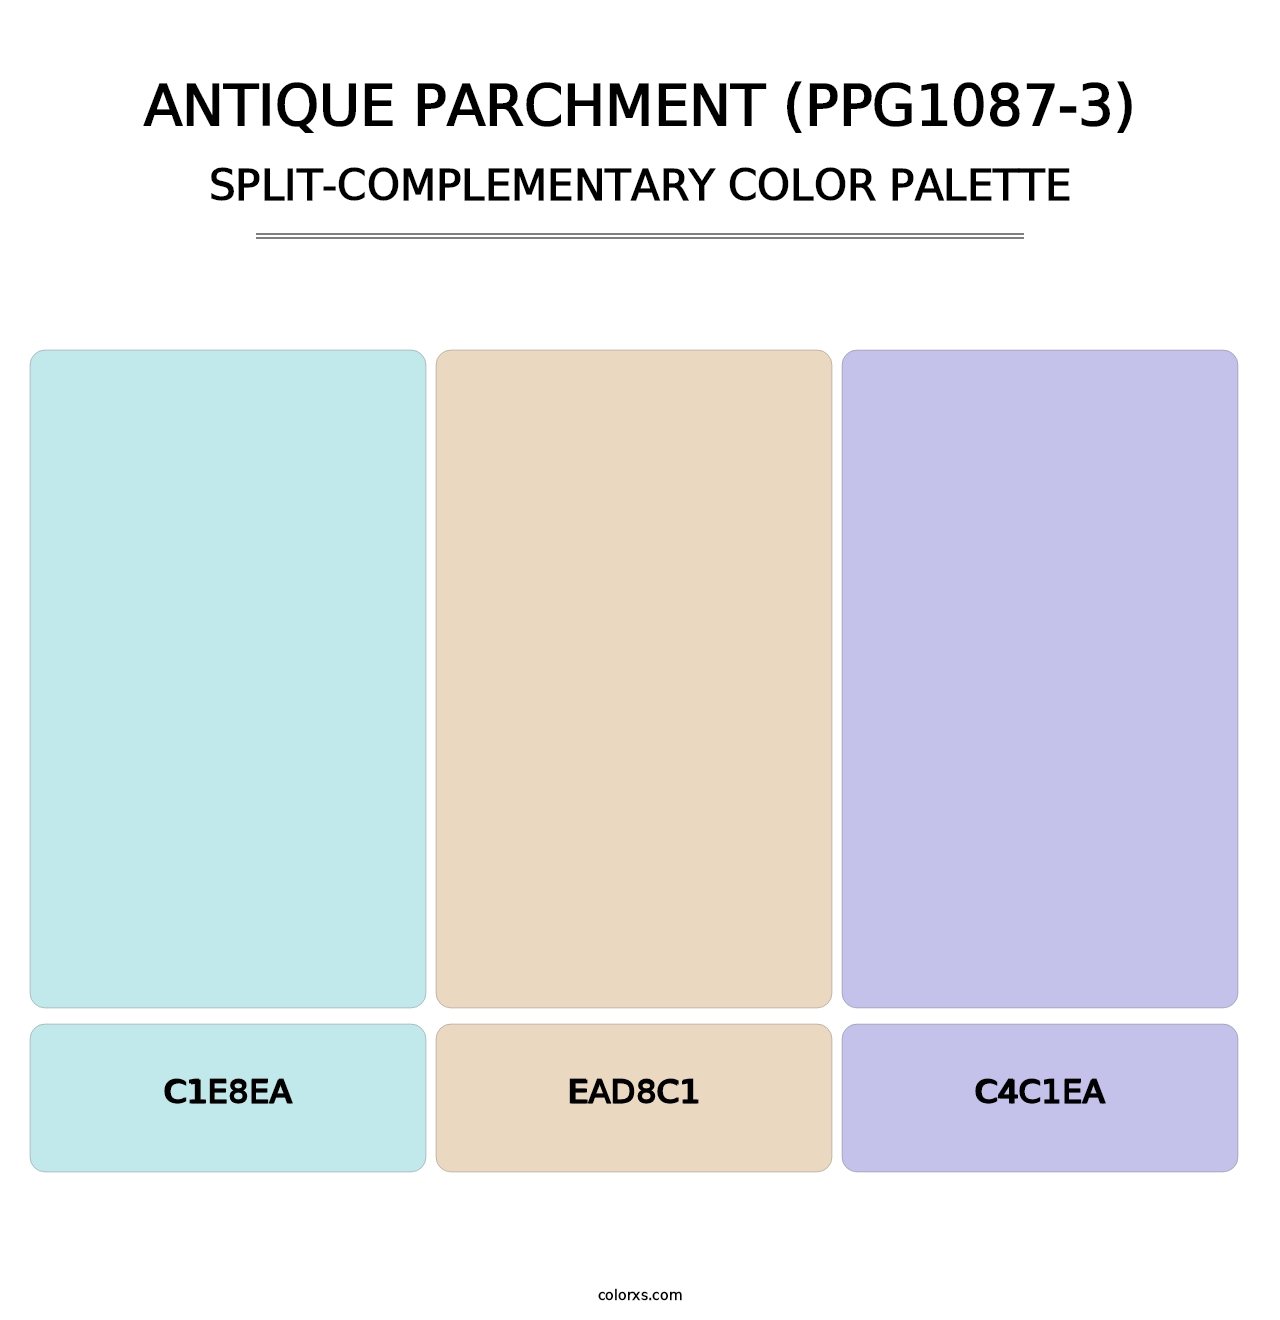 Antique Parchment (PPG1087-3) - Split-Complementary Color Palette